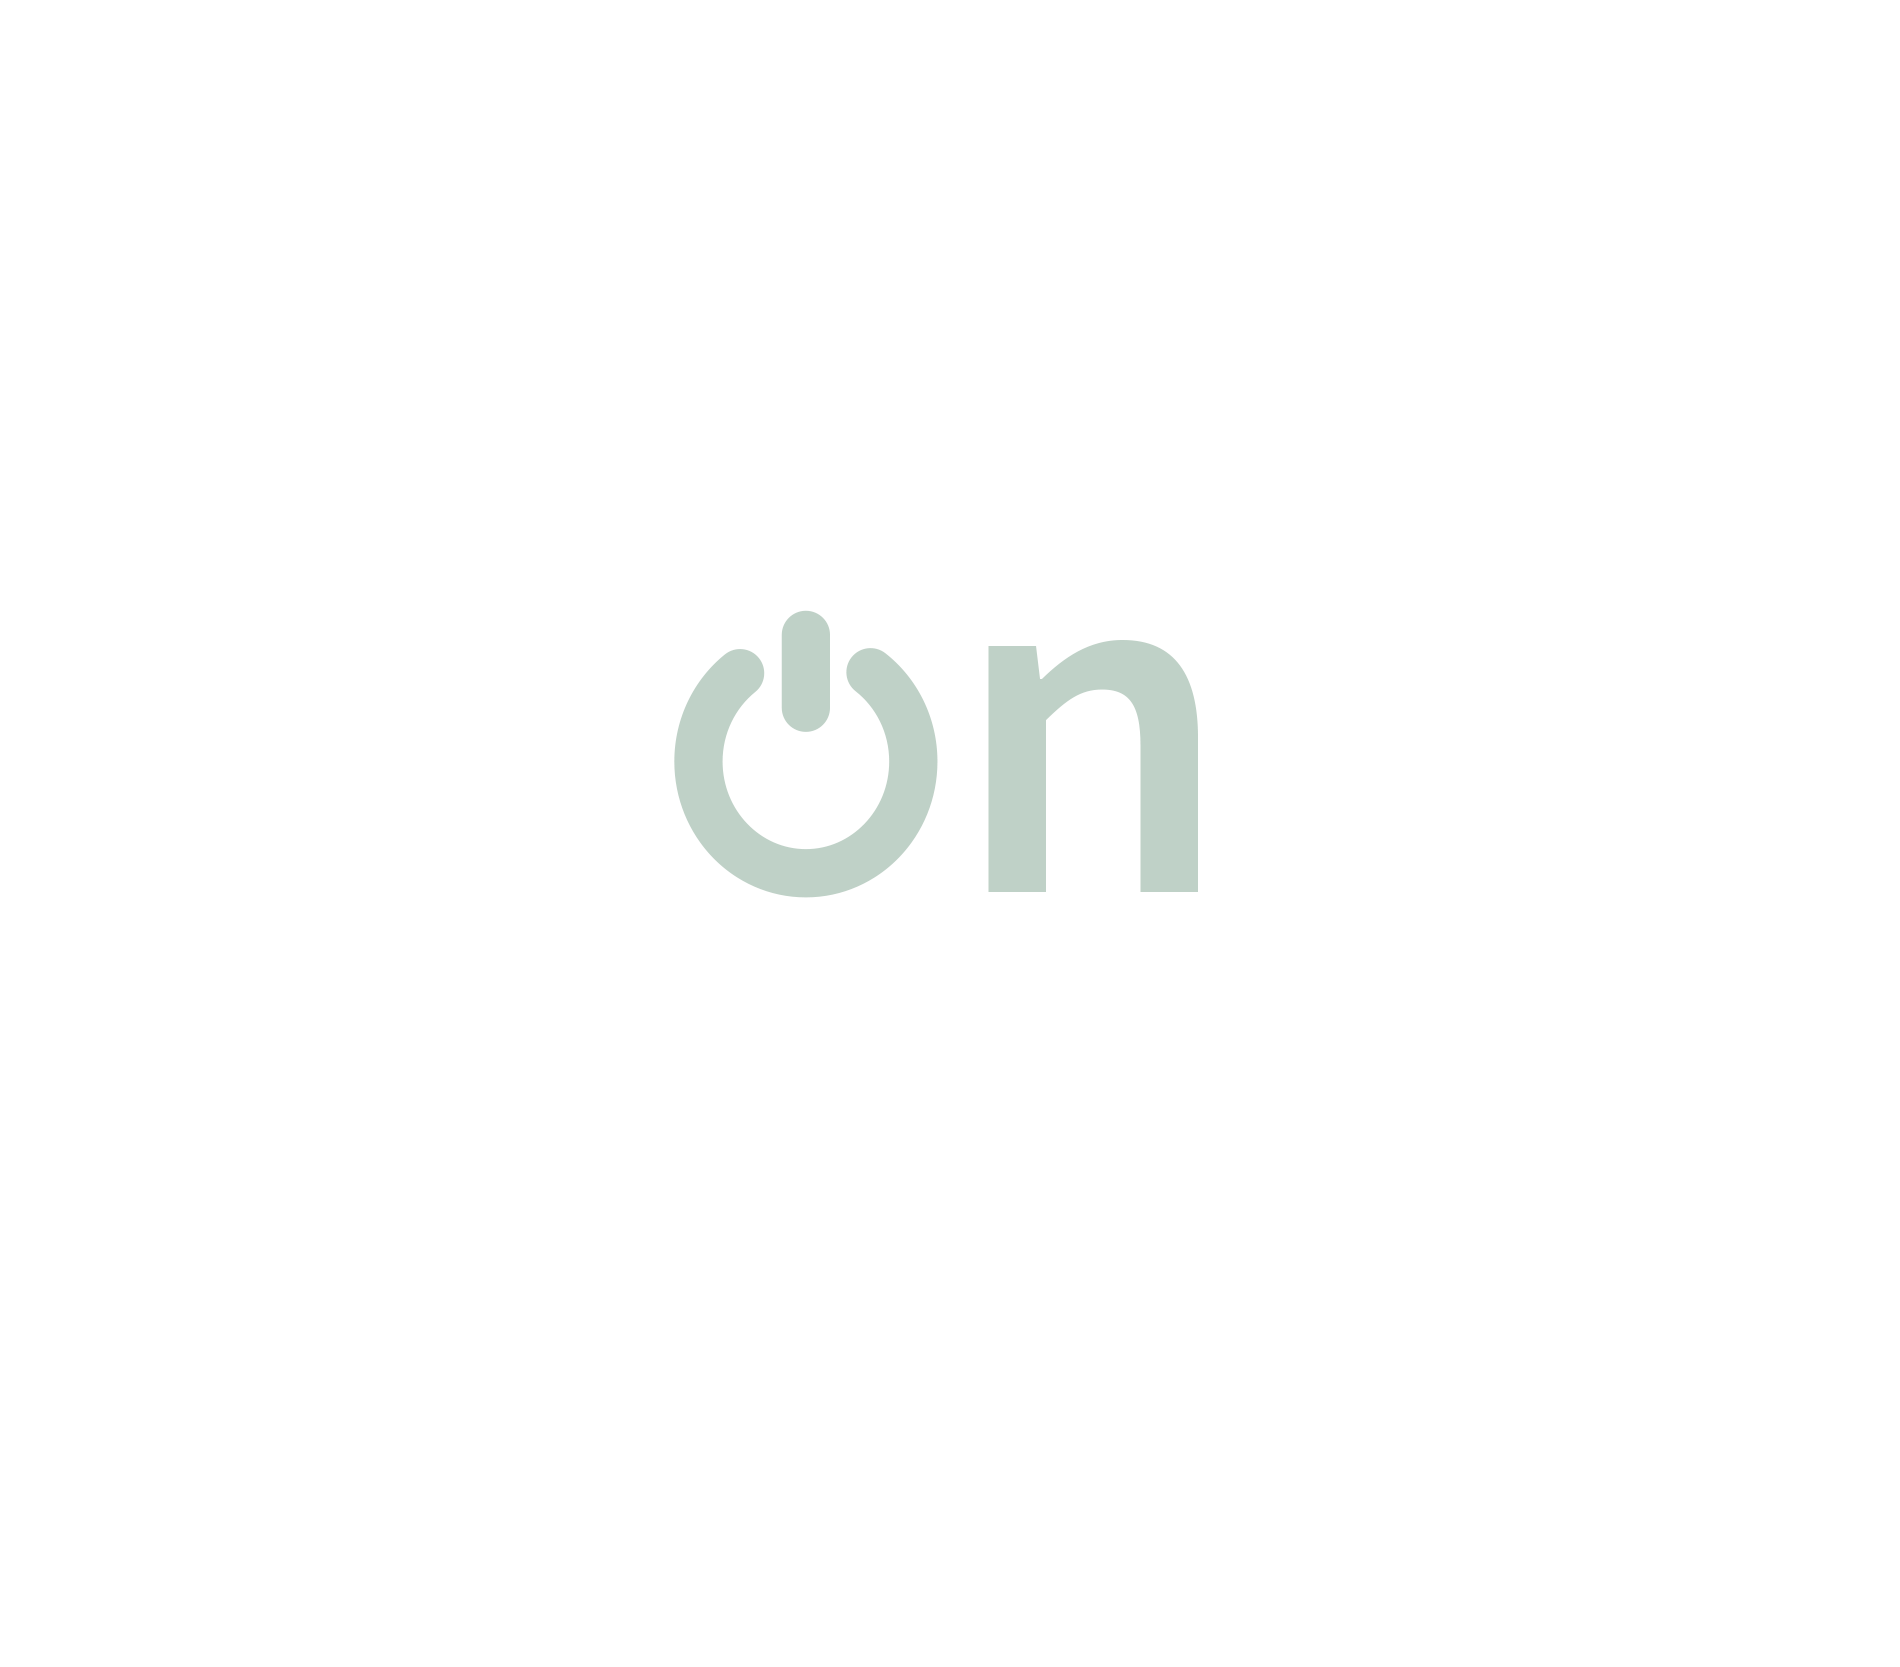 Logotyp platformy Lon